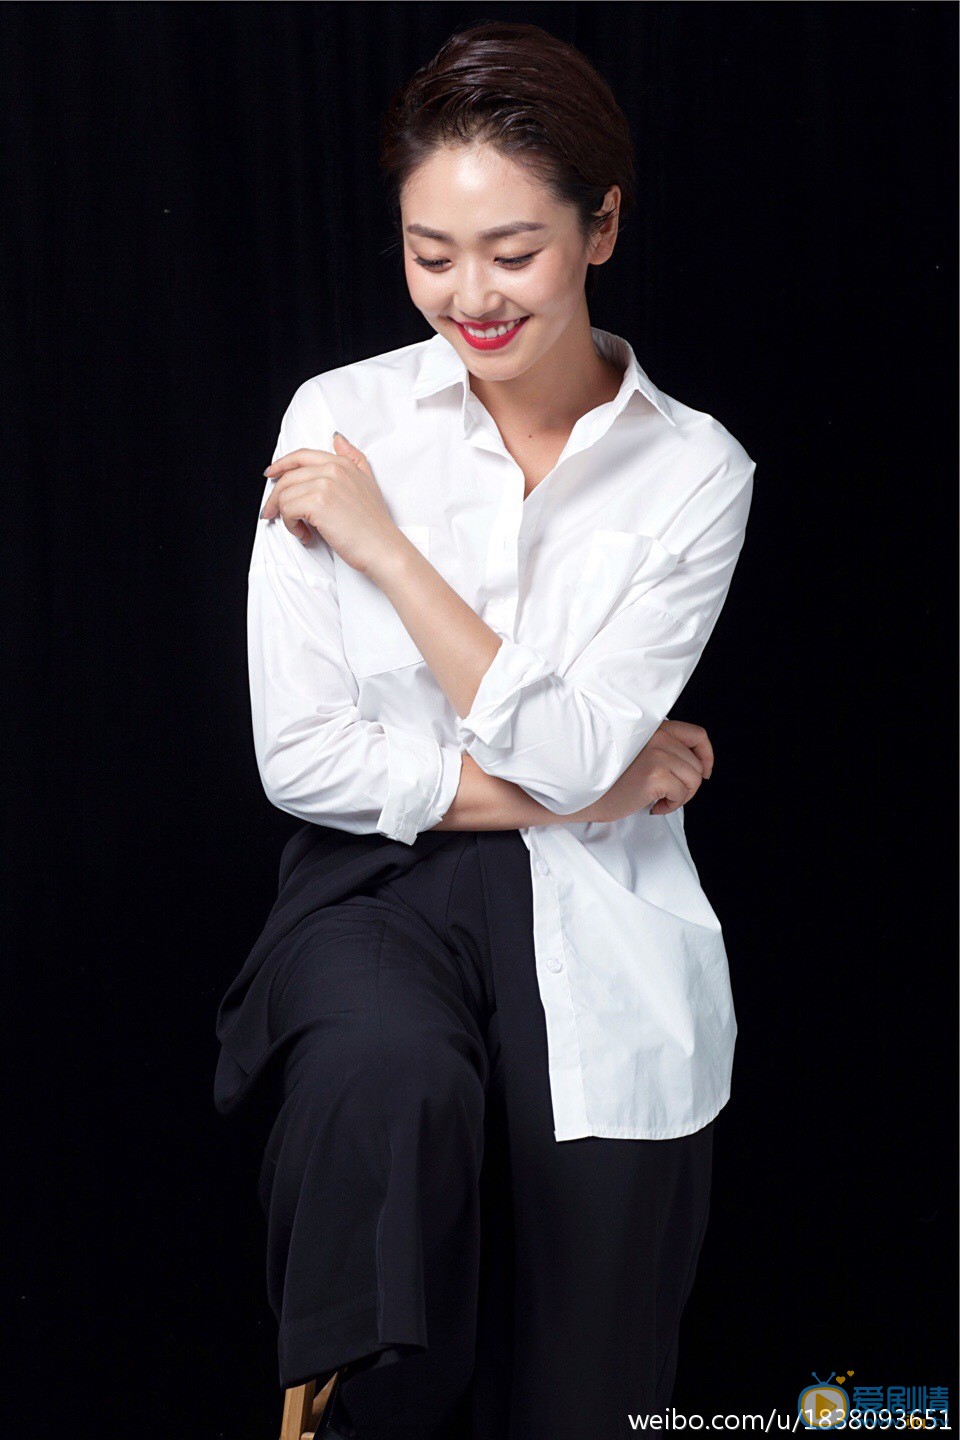 王思思性感写真 青年演员王思思曝光一组个性写真。写真中，王思思身着设计独特的白衬衫黑西裤，简约有型，气场十足。